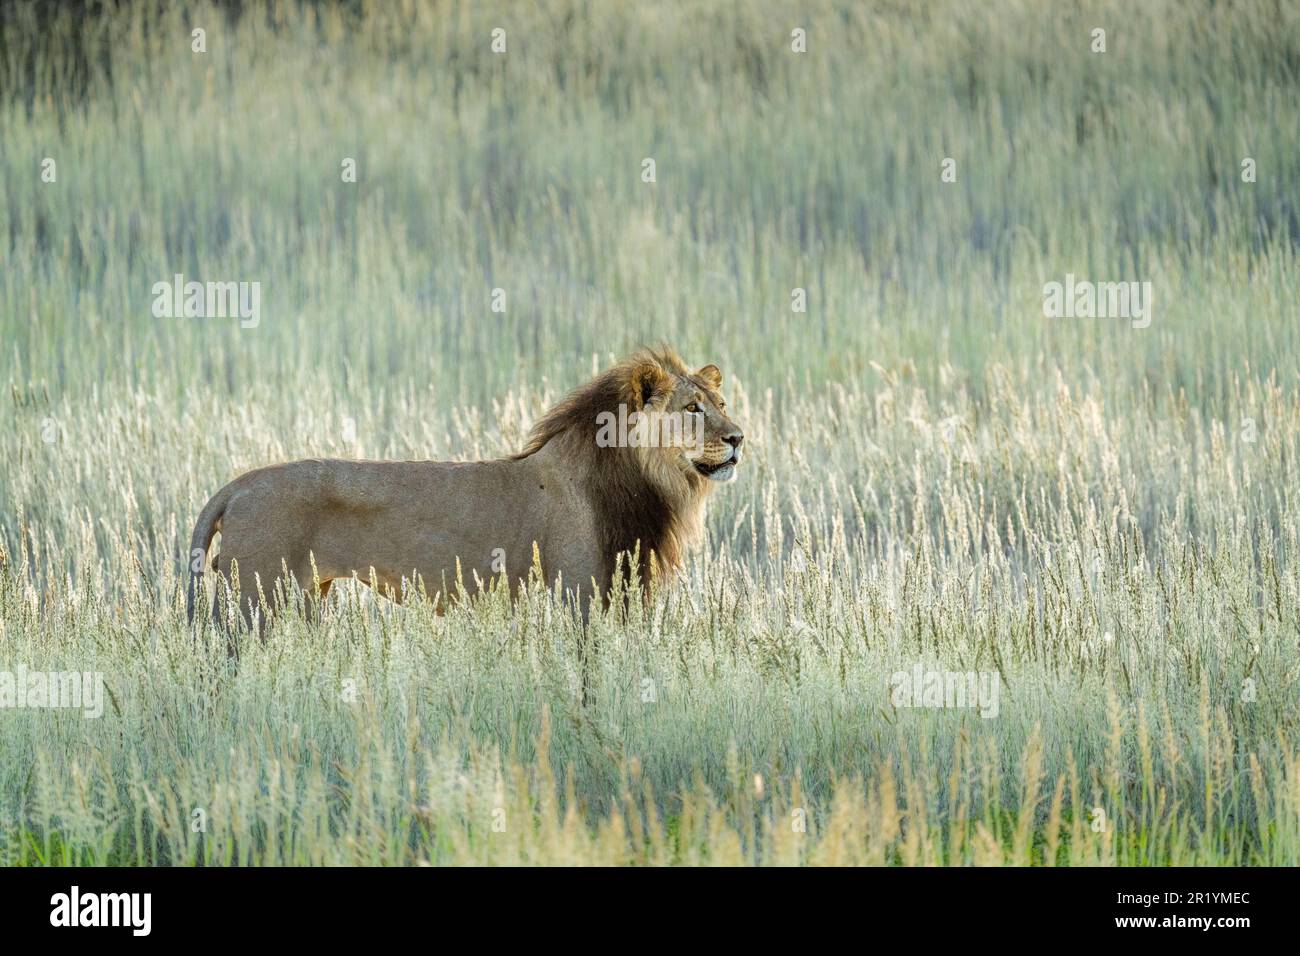 Löwe im Gras läuft, schwarzer Mähne Löwe, Seitenansicht. Kalahari, Kgalagadi Transfrontier Park, Südafrika Stockfoto